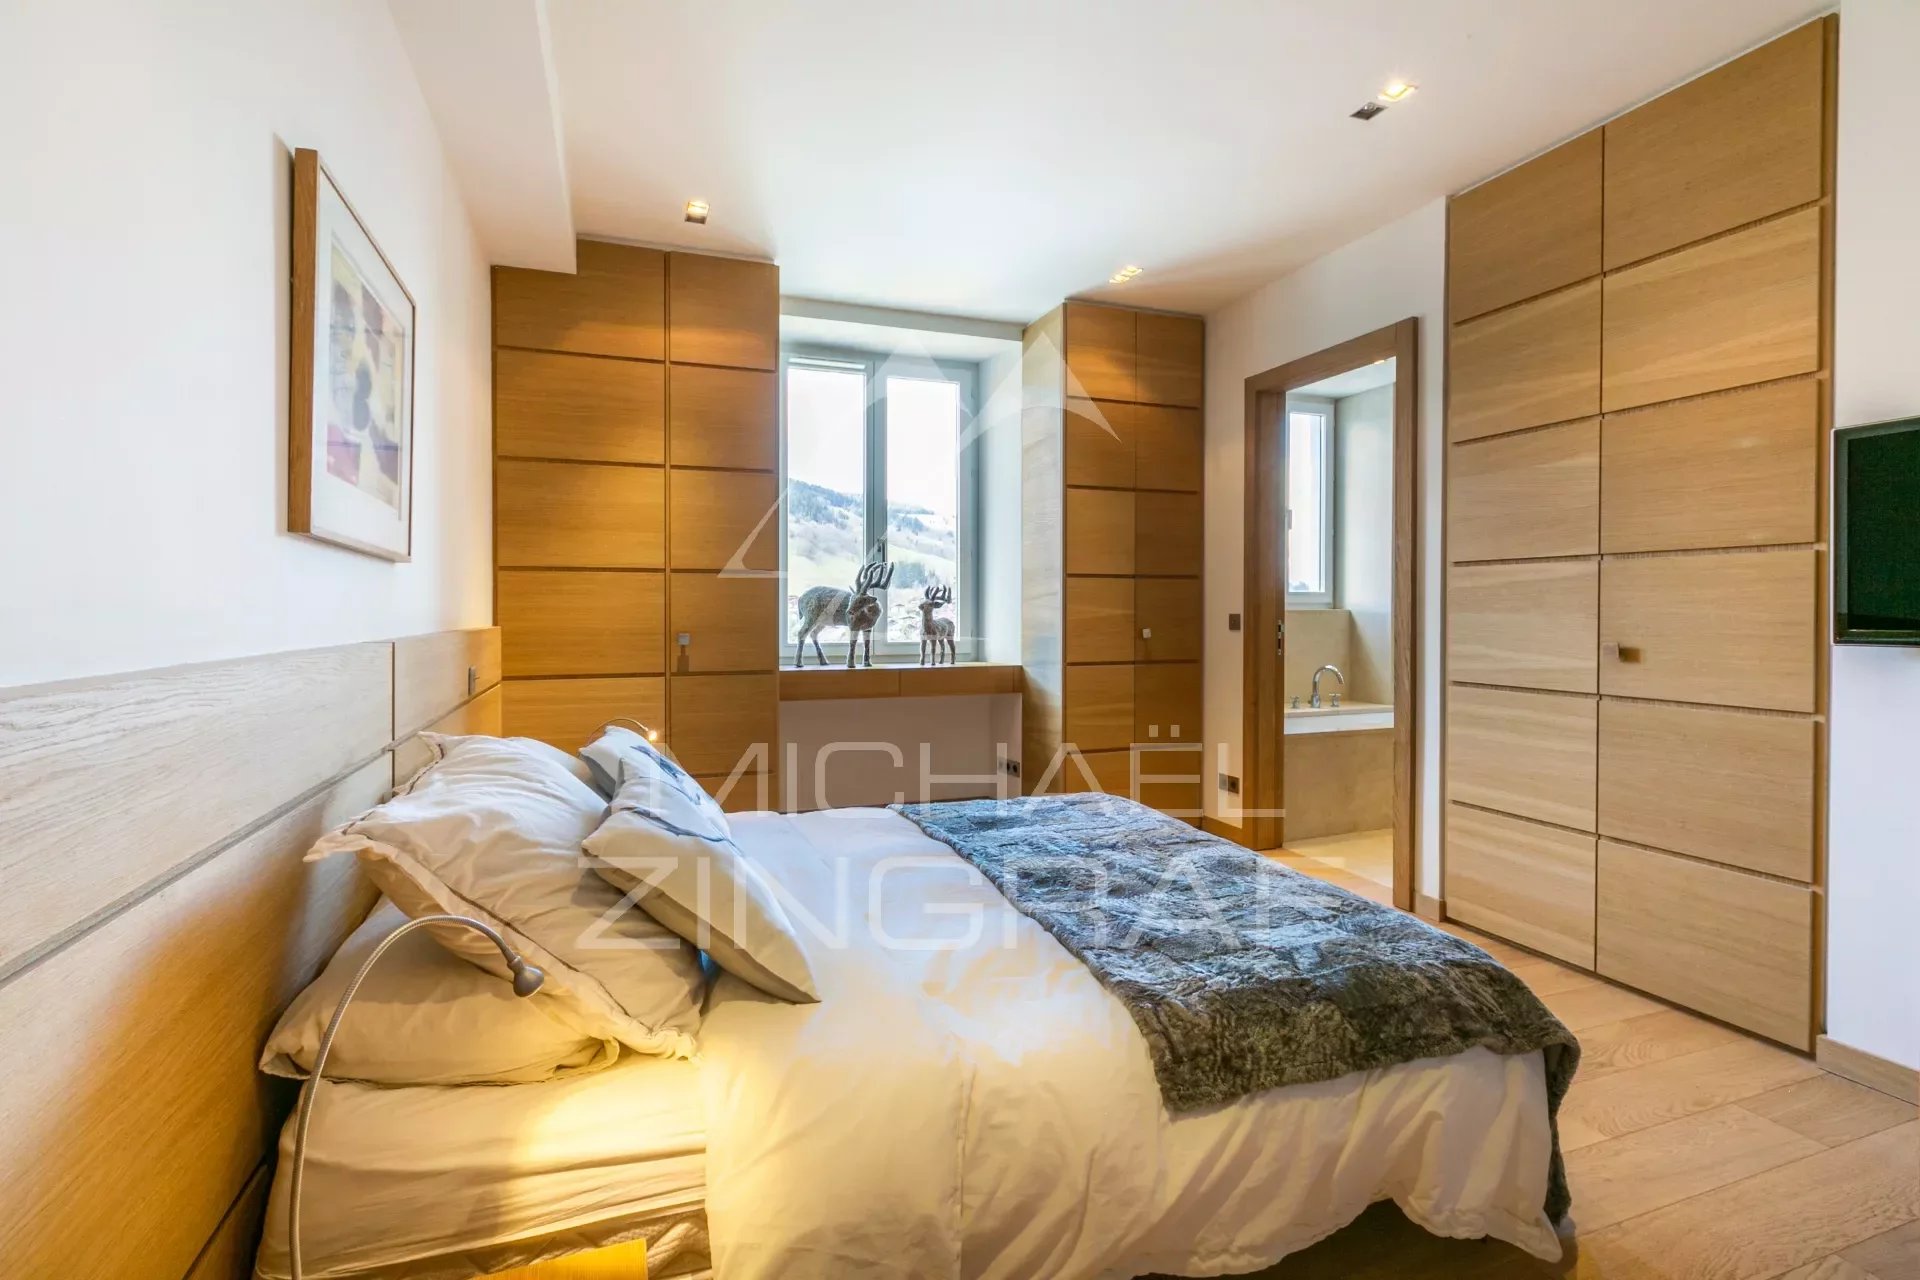 ußergewöhnliches Apartment mit drei Schlafzimmern - Zentrum von Megève - Ausblick und Ruhe - Alles zu Fuß erreichbar